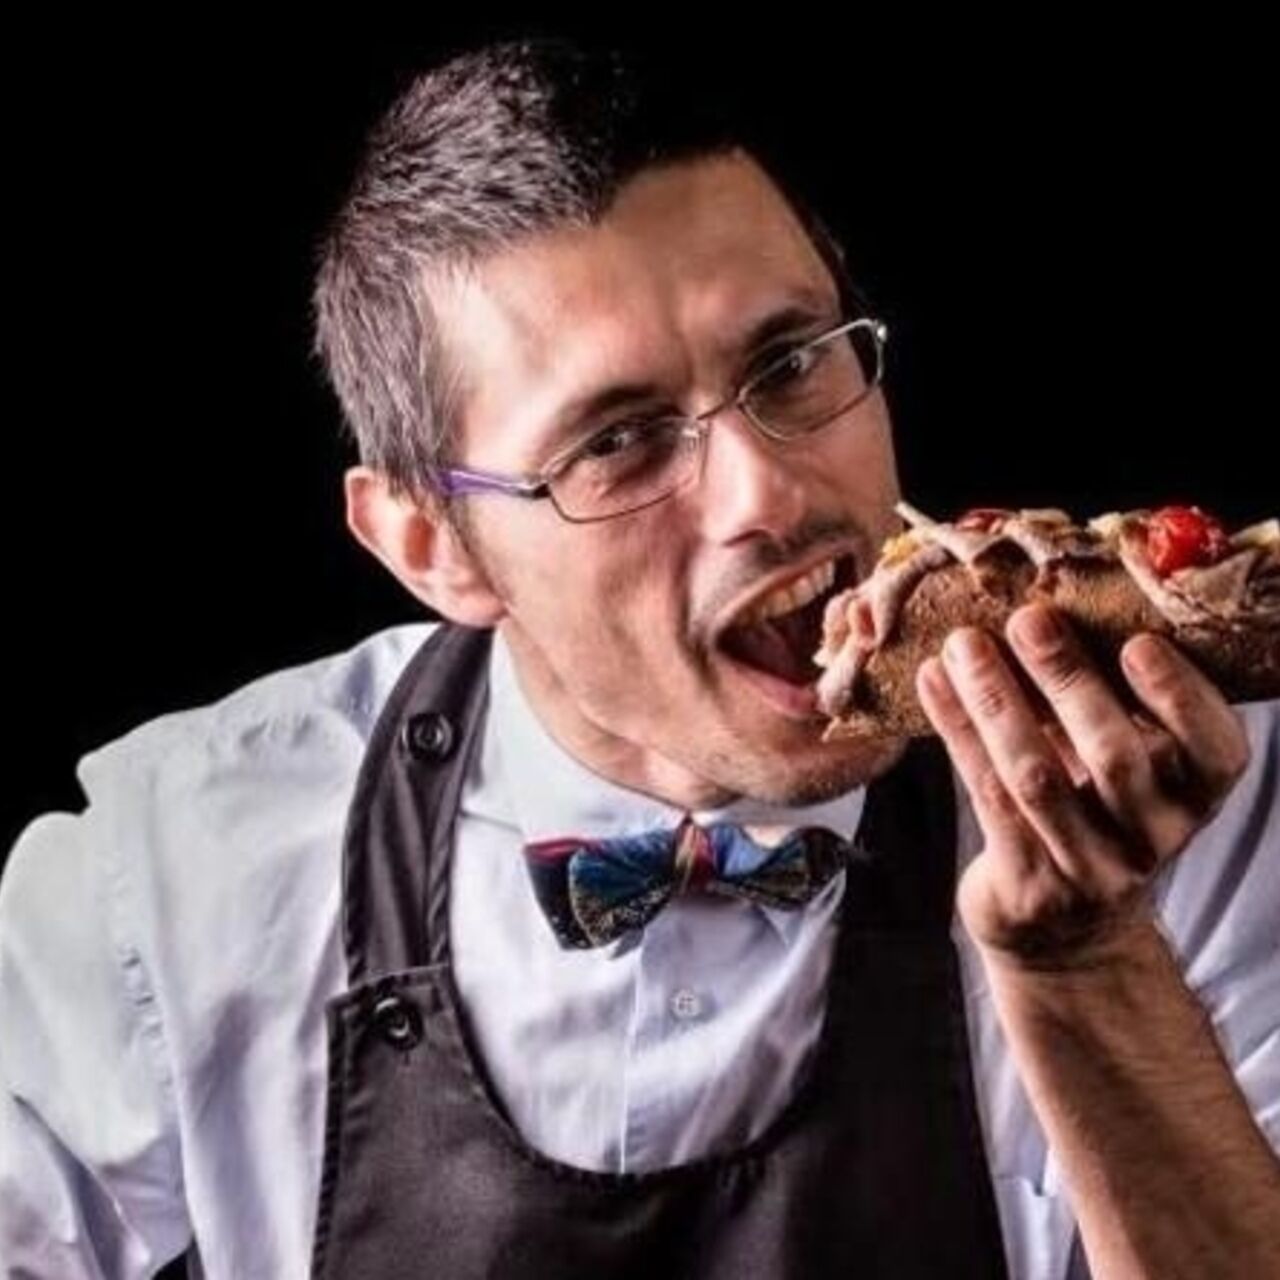 Gurmanski sendvič: Modenski kuhar/ne-kuhar Daniele Reponi od ... proizvajalca do potrošnika